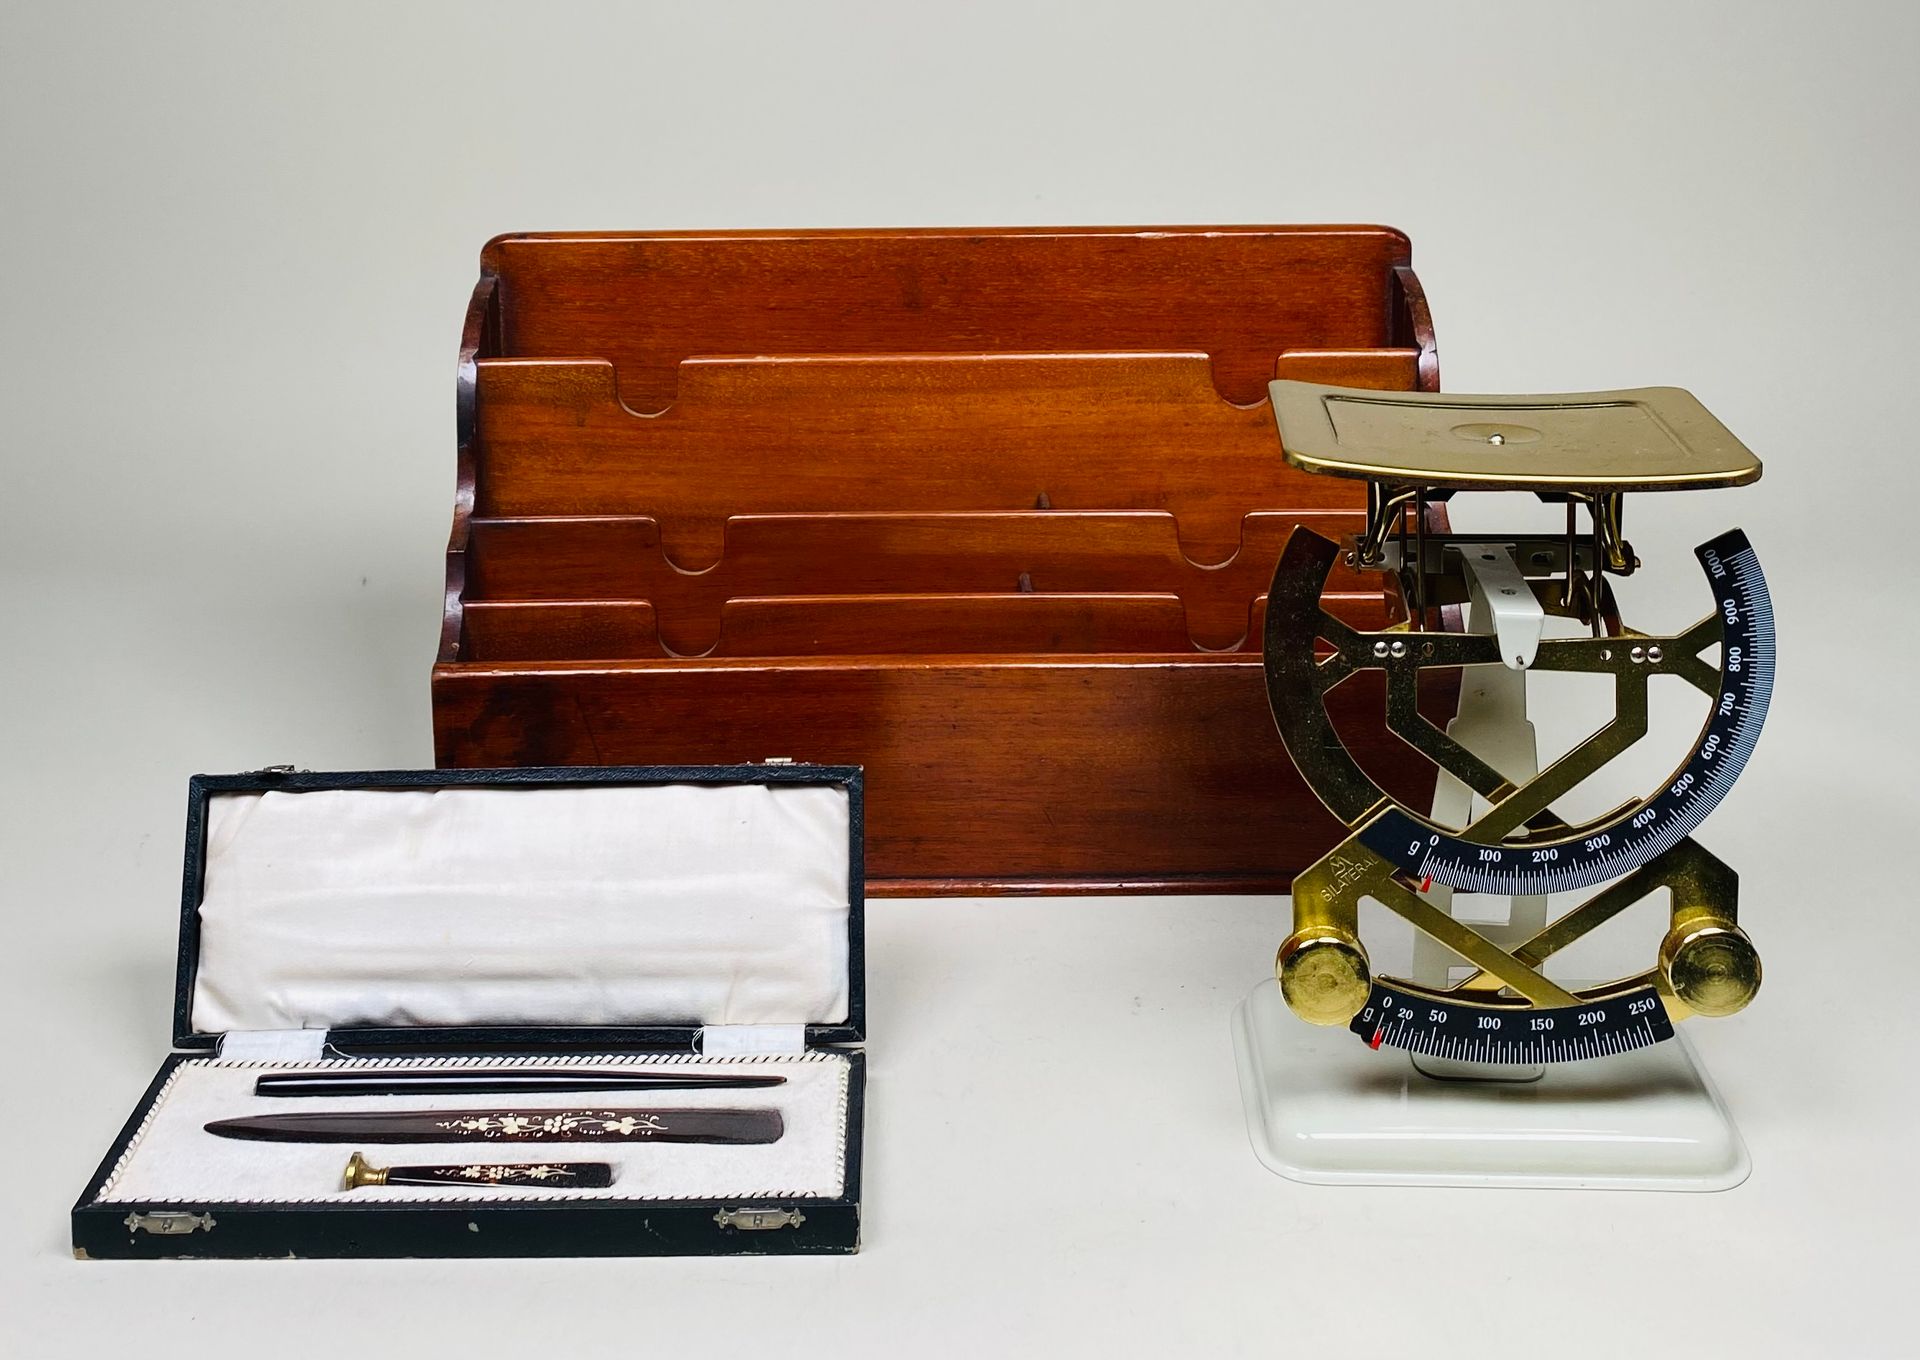 LOT 桃花心木信纸架。- 金属字母标尺--电木书桌套装，装在一个箱子里。